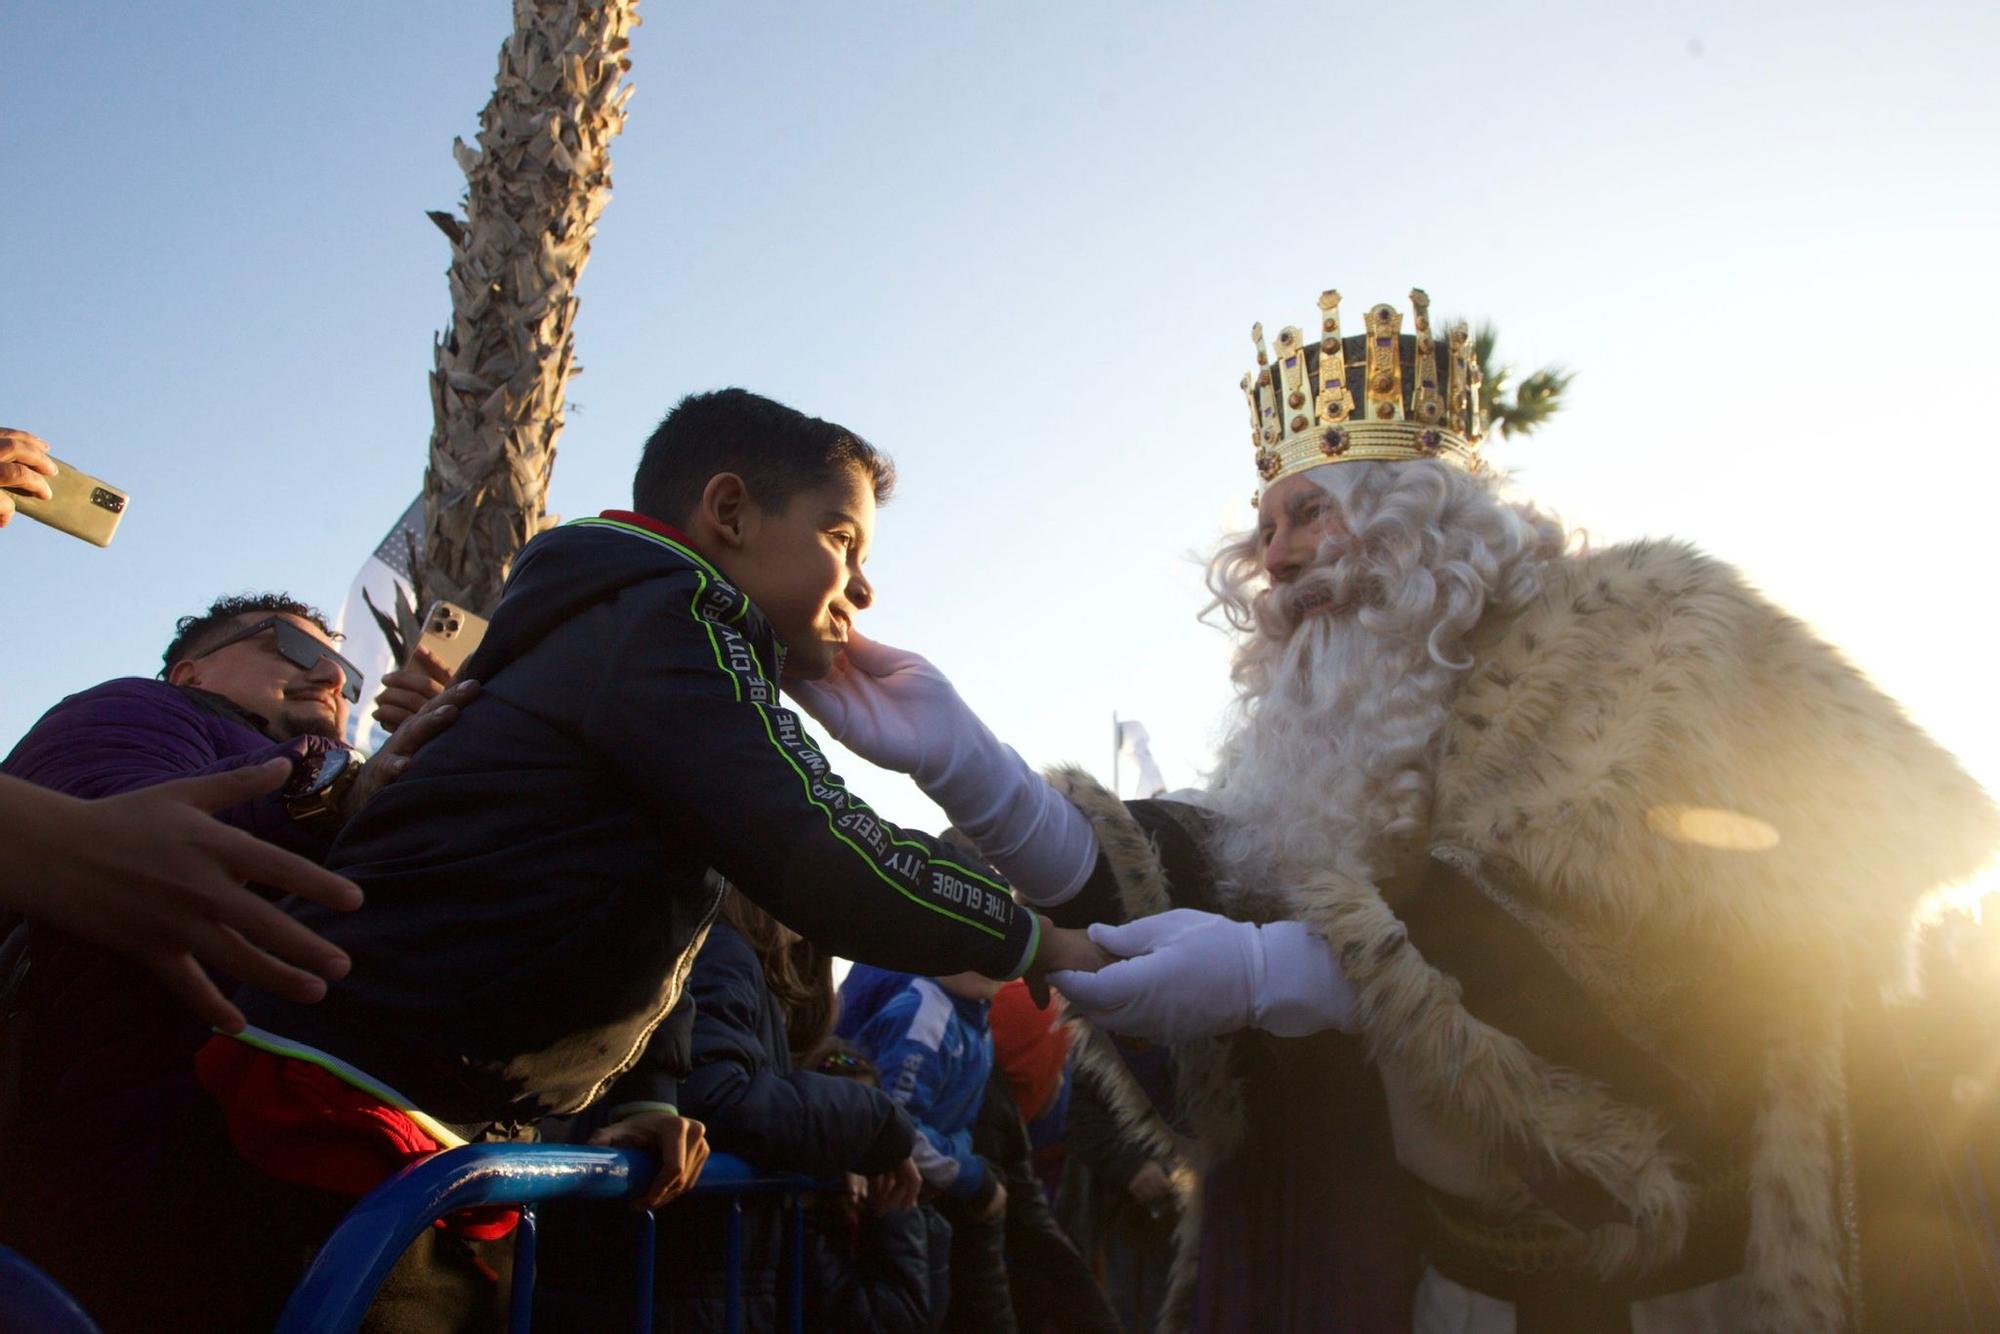 Los Reyes Magos llegan a Alicante